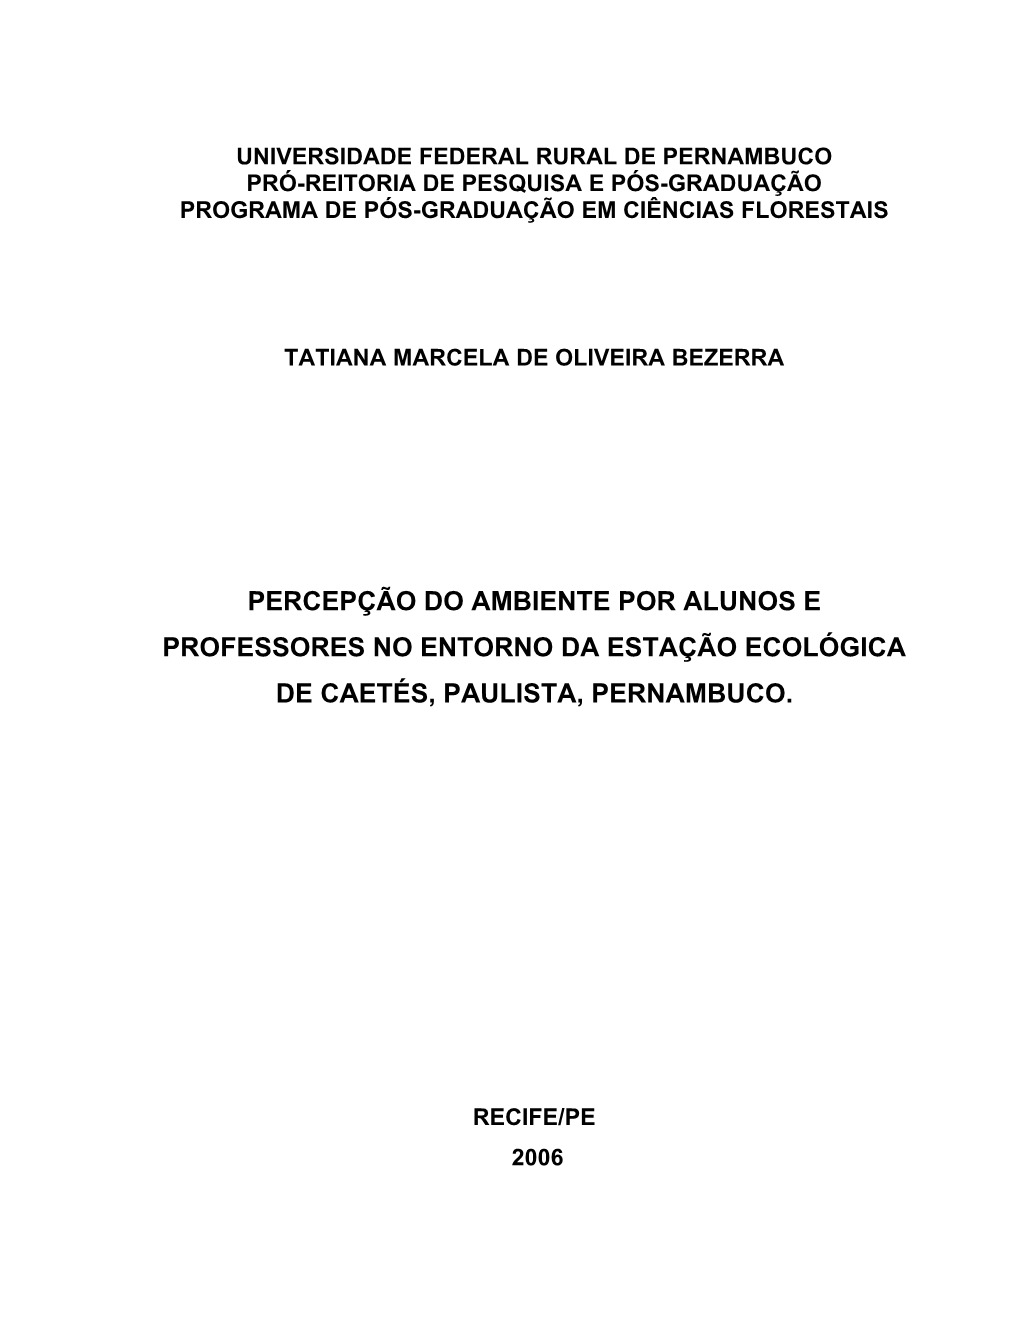 Parte Inicial Dissertação Tatiana Bezerra